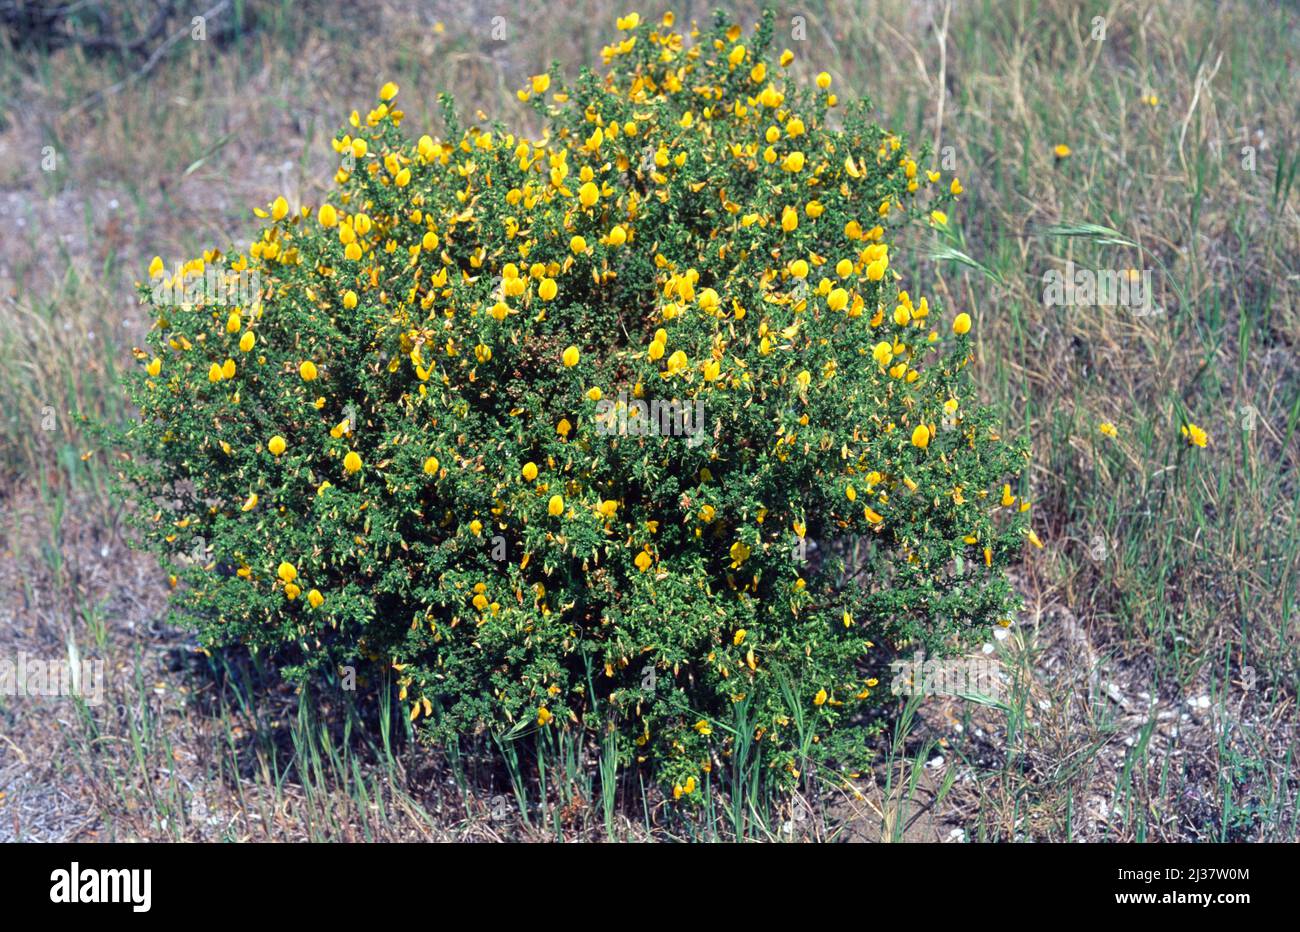 La restharrow jaune (Ononis natrix) est une plante vivace indigène du bassin méditerranéen. Banque D'Images